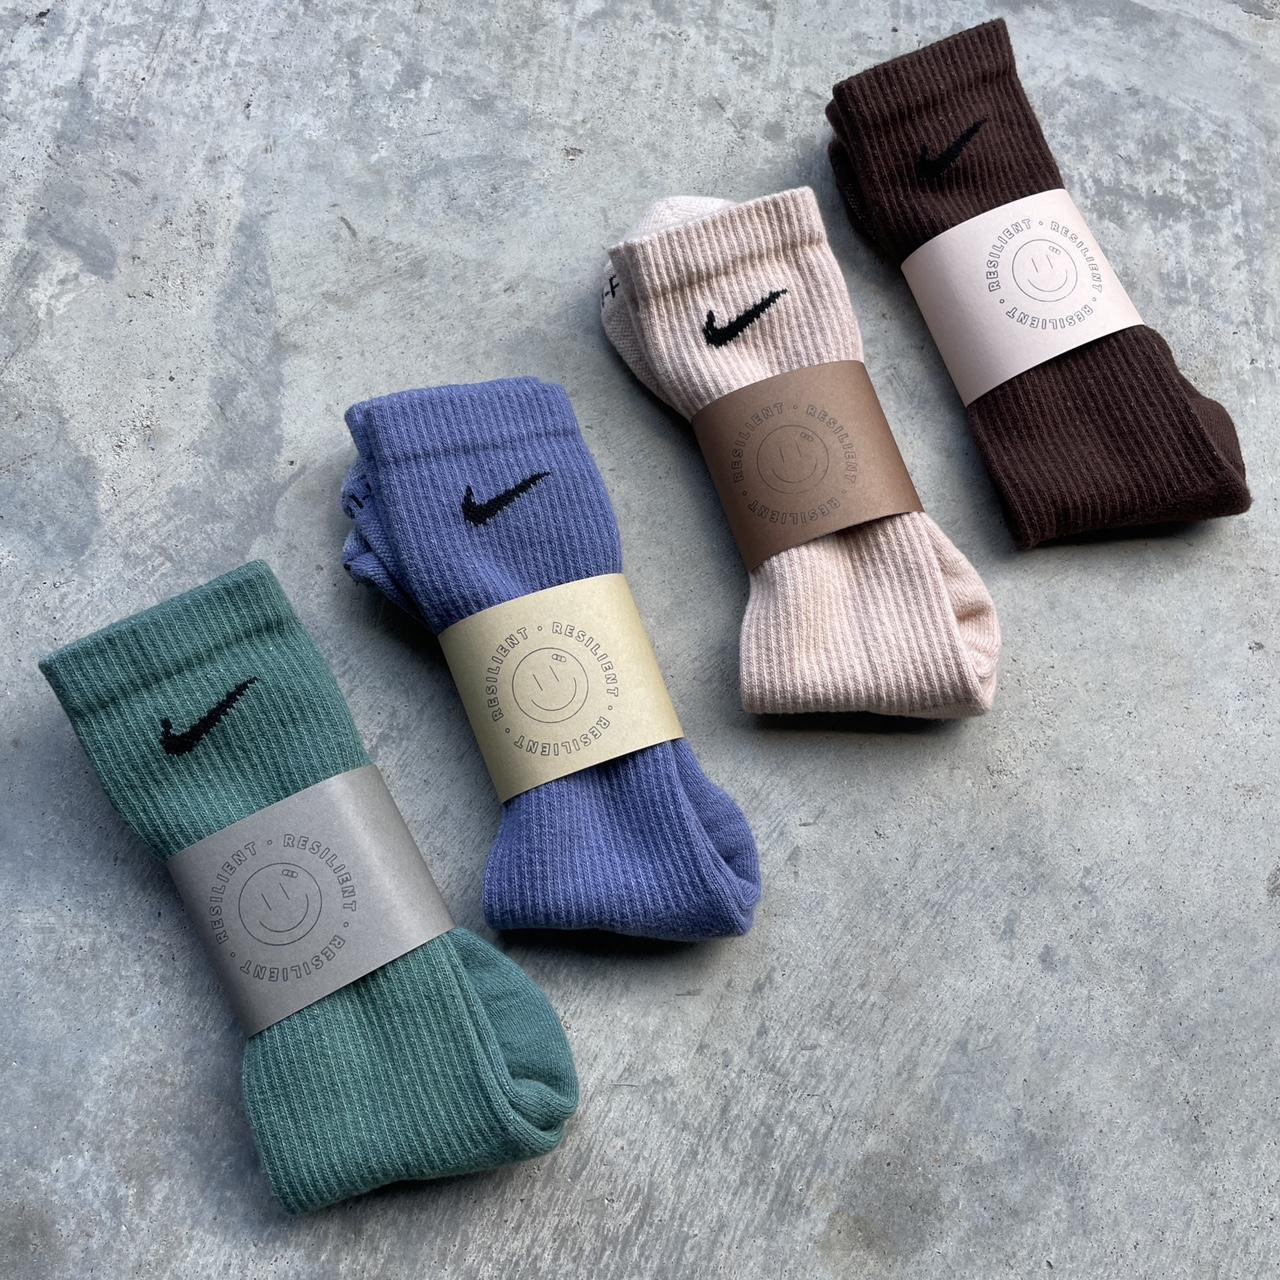 Nike Men's Brown and Tan Socks